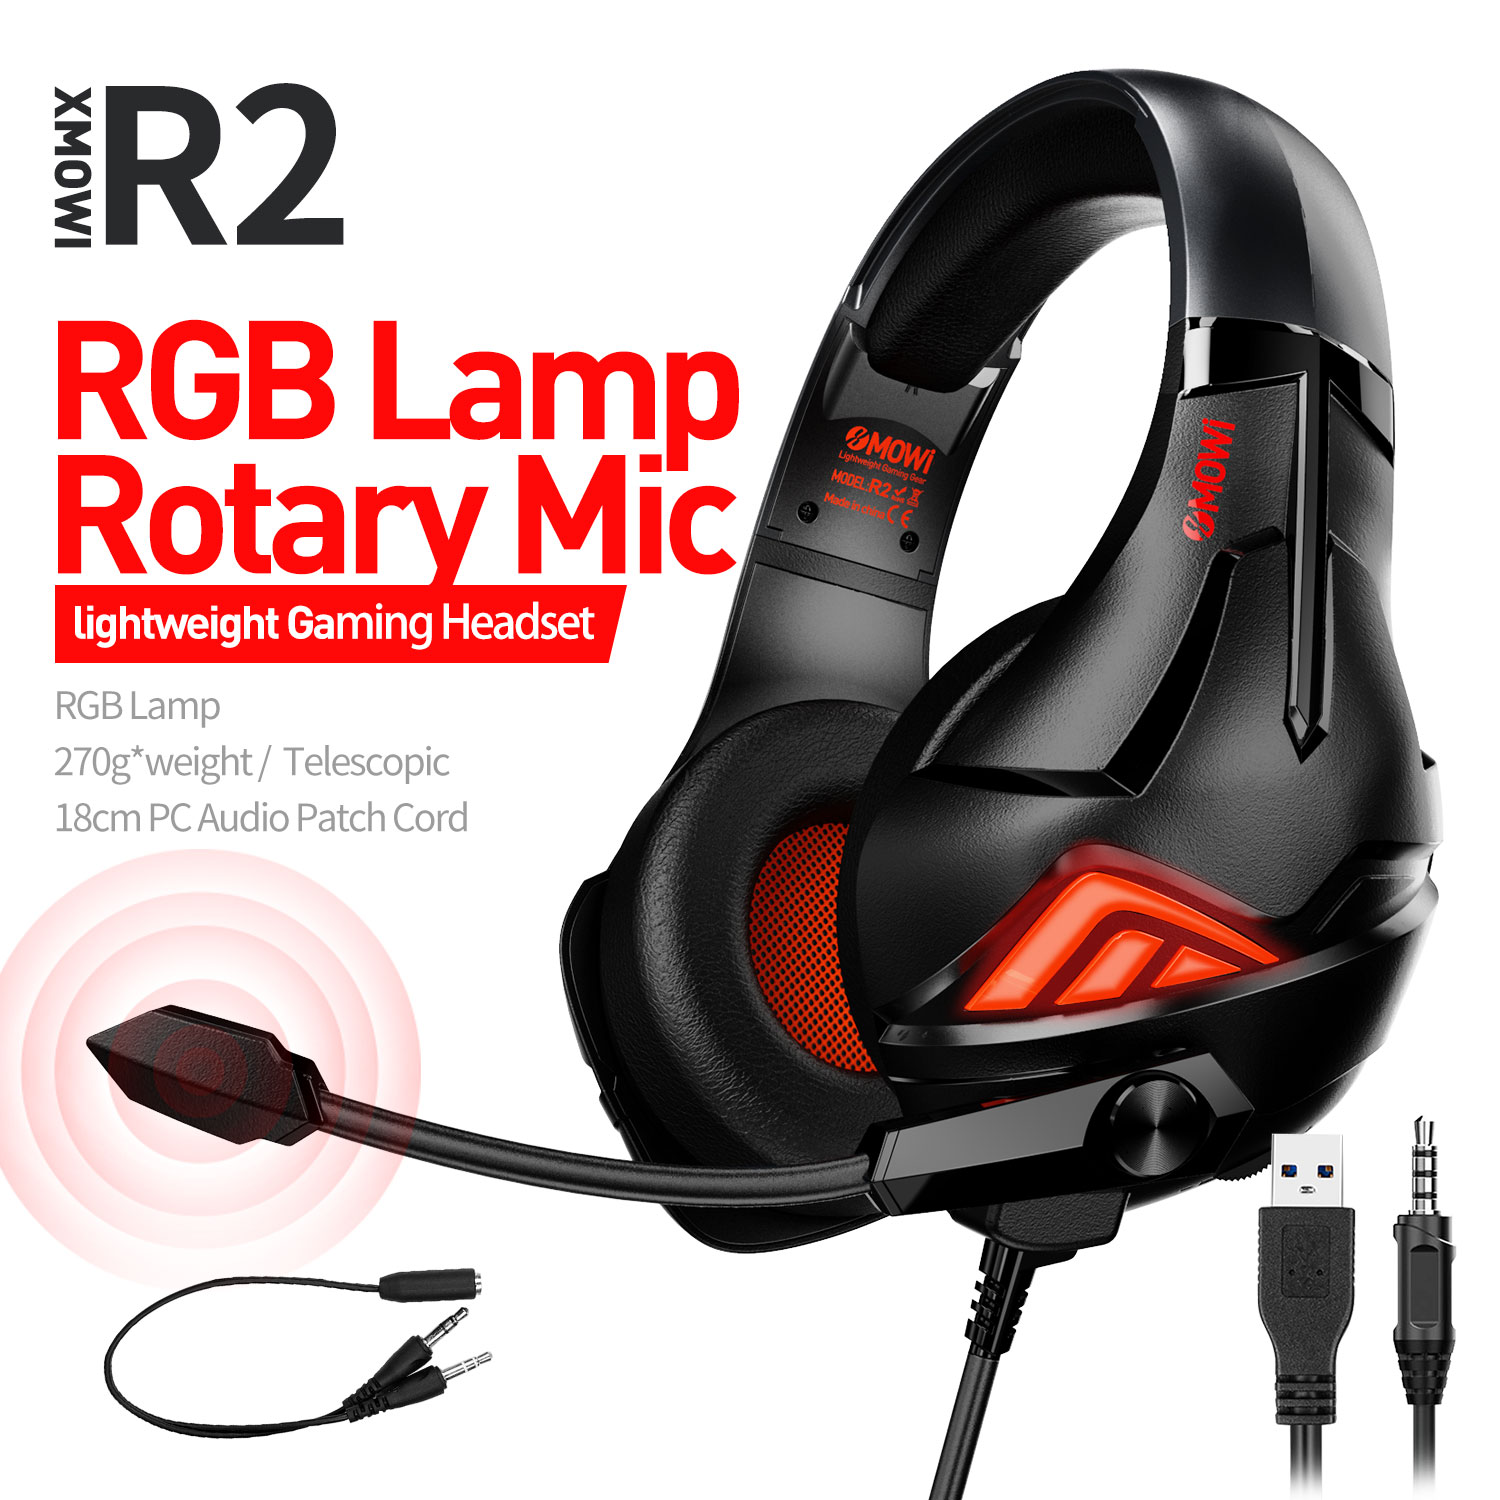 Tai nghe chụp tai xMOWI R2 - Tai nghe gaming có mic - Chống tiếng ồn - Đèn led RGB - Kết nối 3.5mm và USB - Hàng Chính Hãng